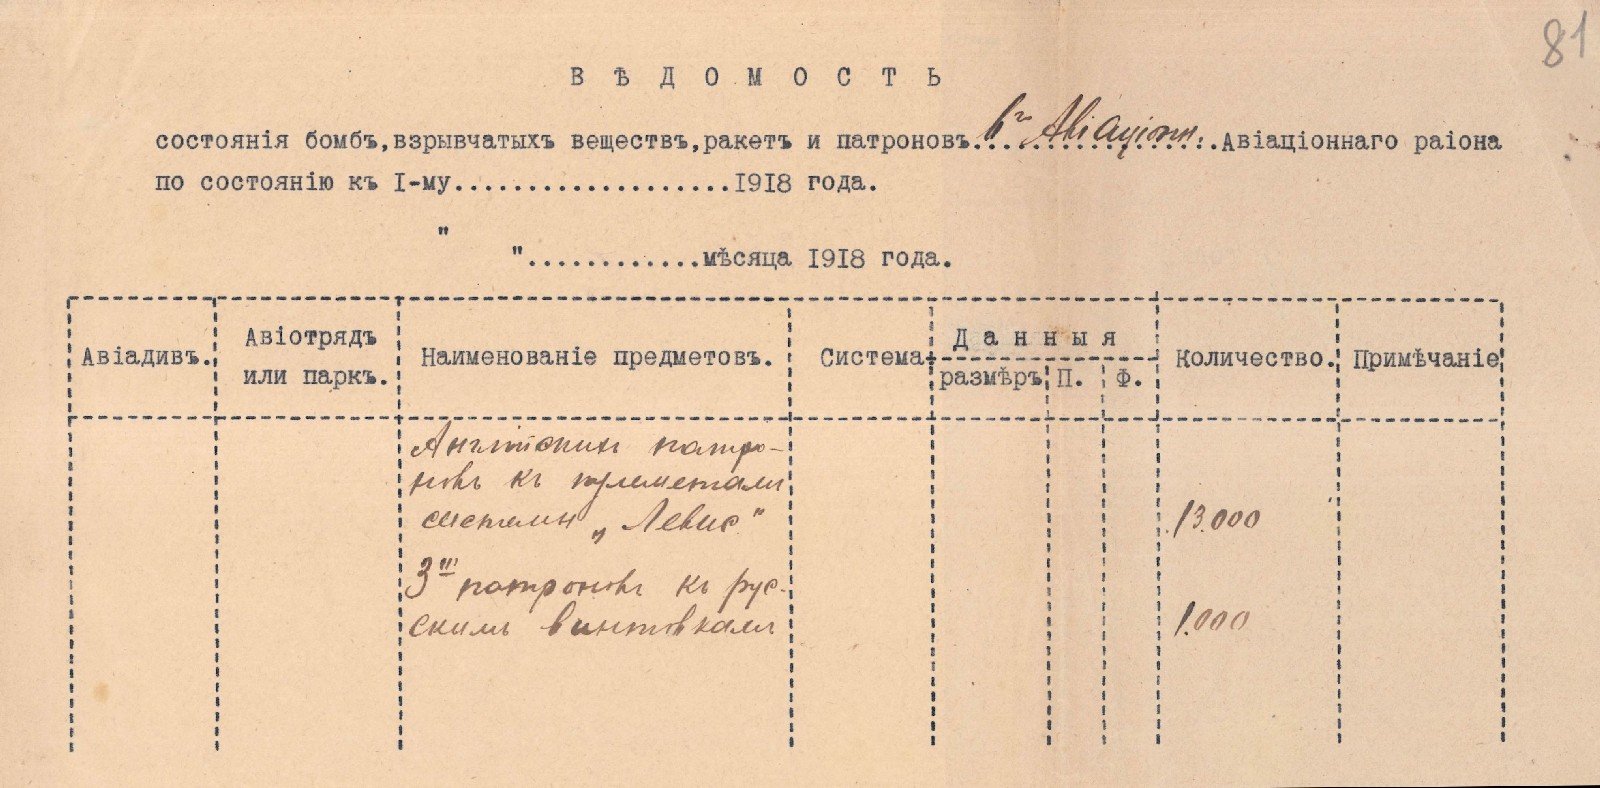 Відомості про кількість зброї, ракет та патронів авіачастин 6-го Полтавського авіаційного дивізіону гетьманської армії. Серпень 1918 р.